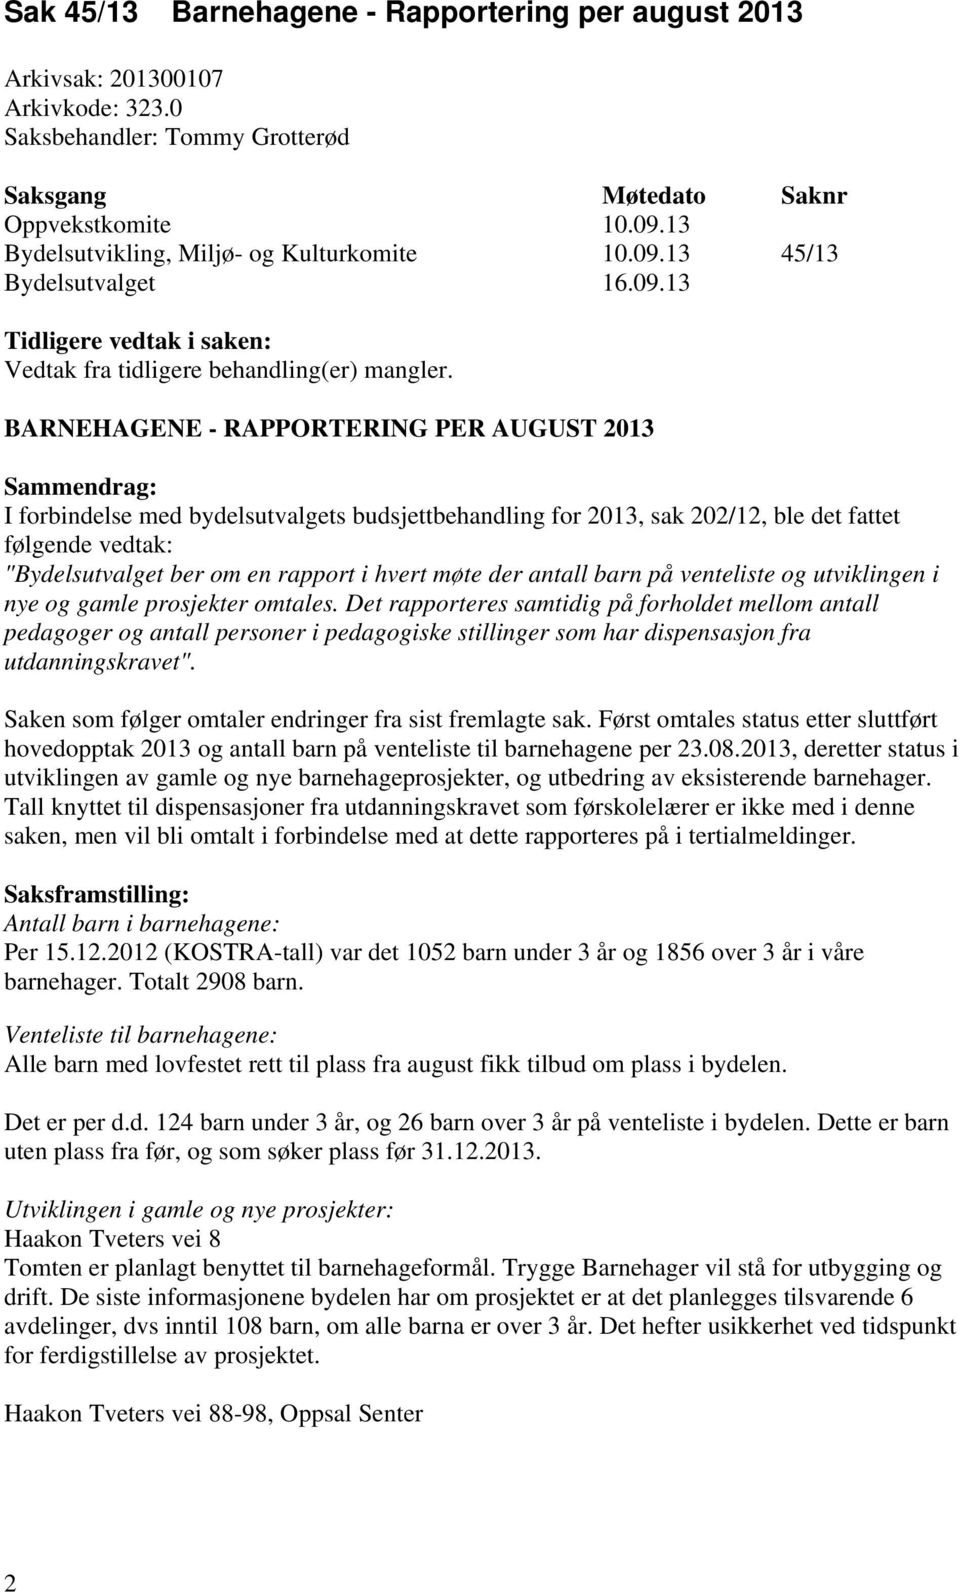 BARNEHAGENE - RAPPORTERING PER AUGUST 2013 Sammendrag: I forbindelse med bydelsutvalgets budsjettbehandling for 2013, sak 202/12, ble det fattet følgende vedtak: "Bydelsutvalget ber om en rapport i